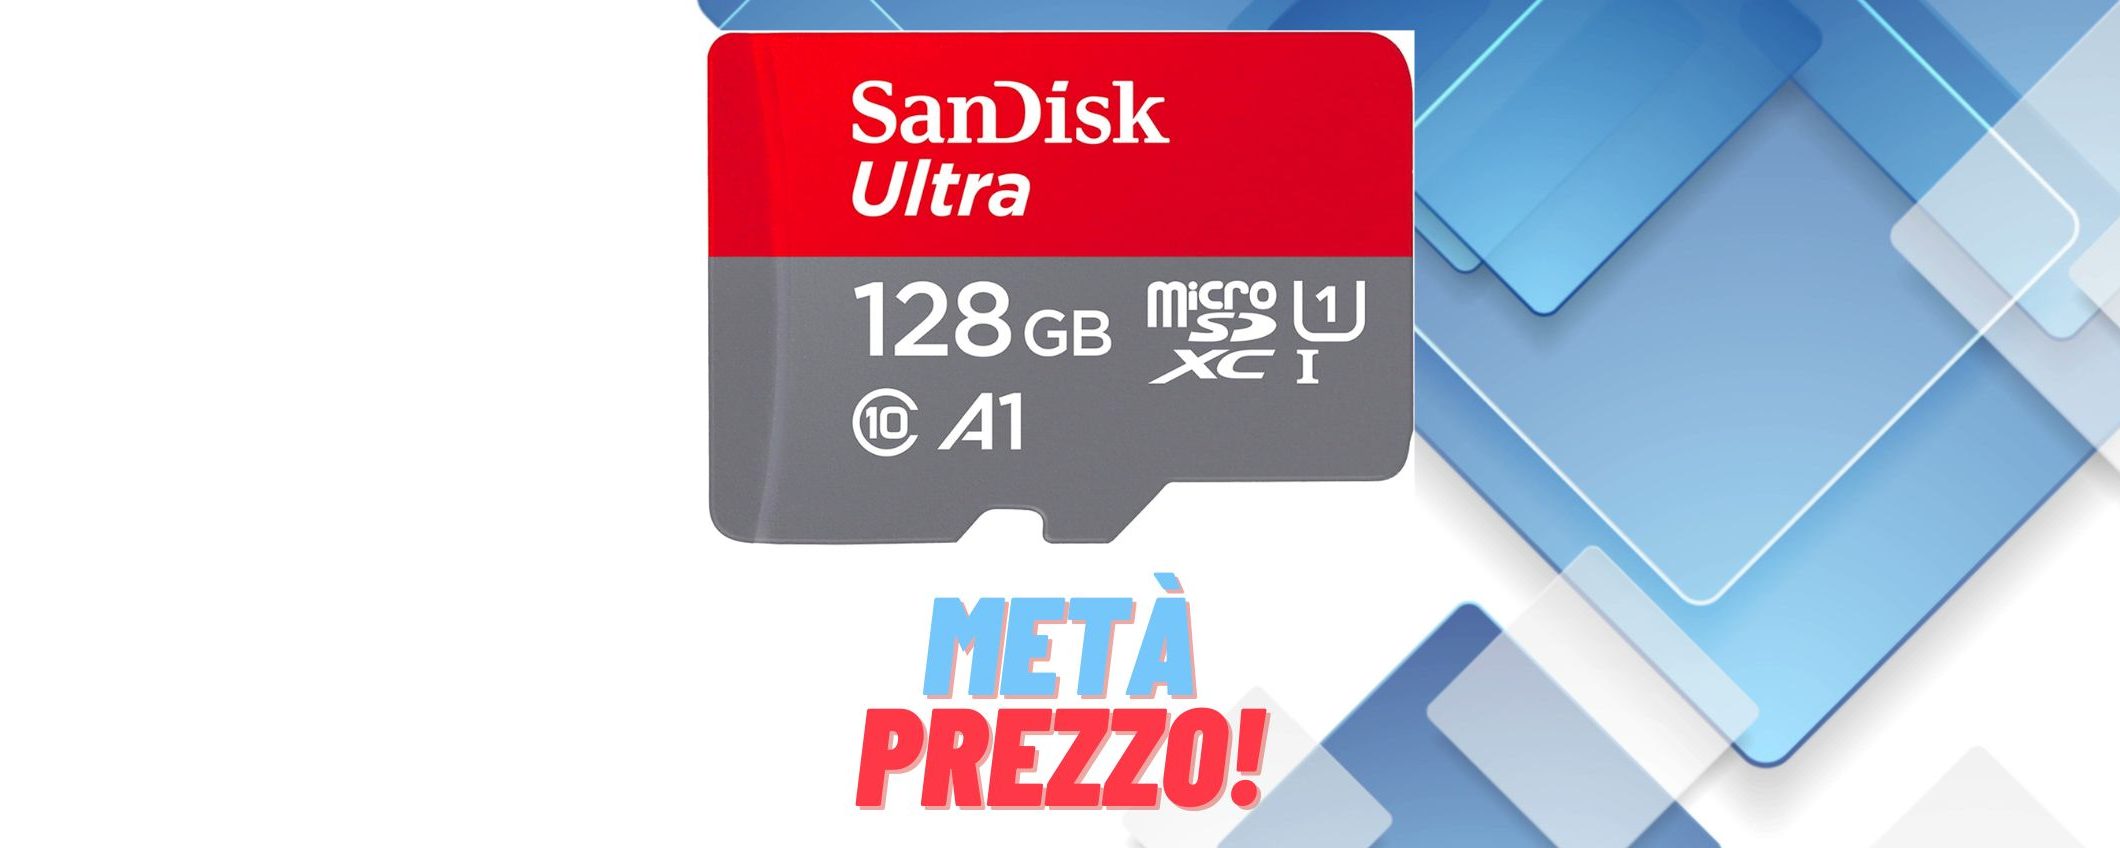 SanDisk 128GB Ultra microSD a META' PREZZO su Amazon (14,53€)